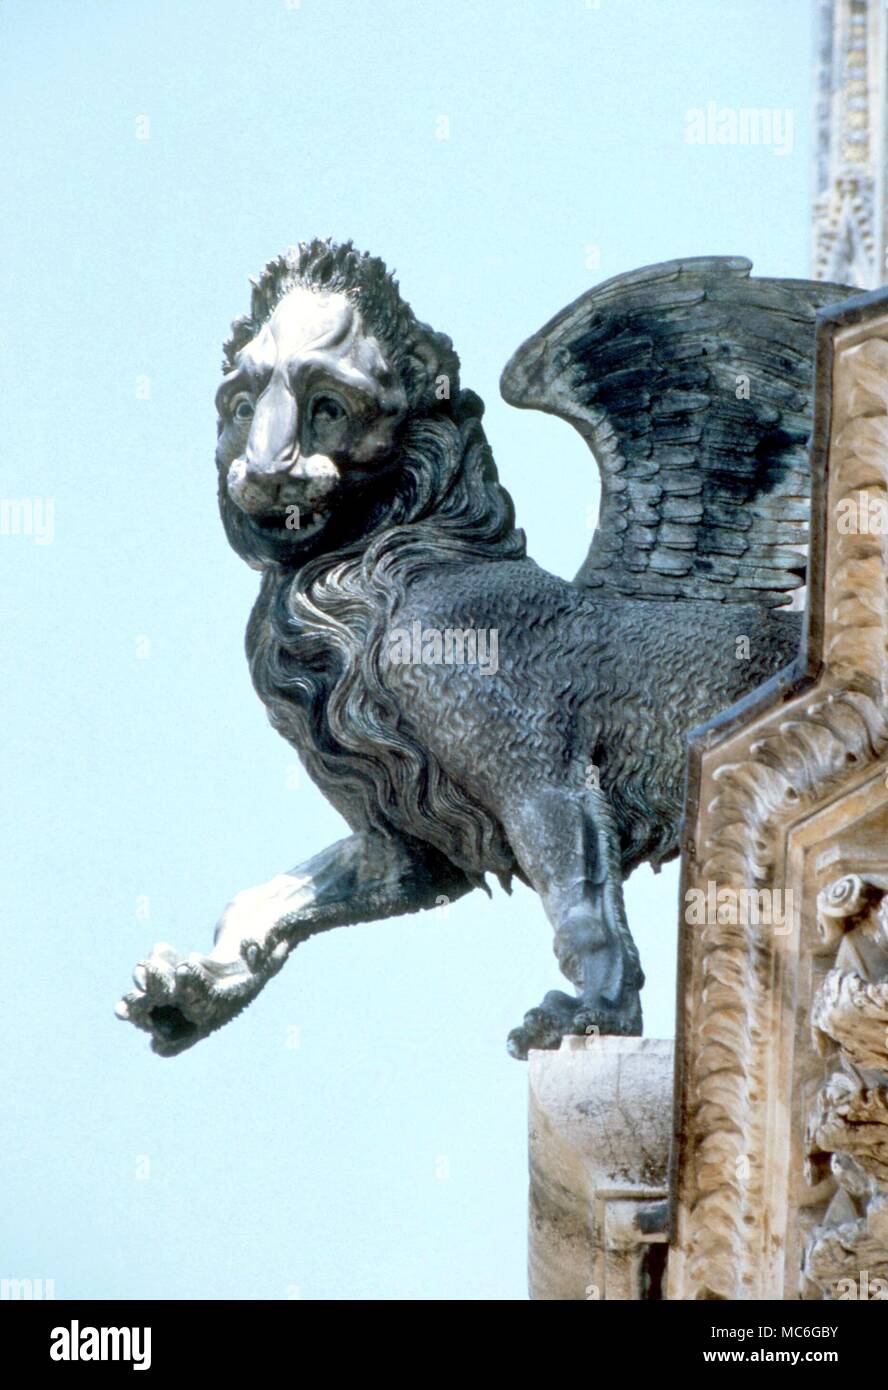 León como emblema de San Marcos, en la fachada de la Catedral de Orvieto, Italia. Foto de stock